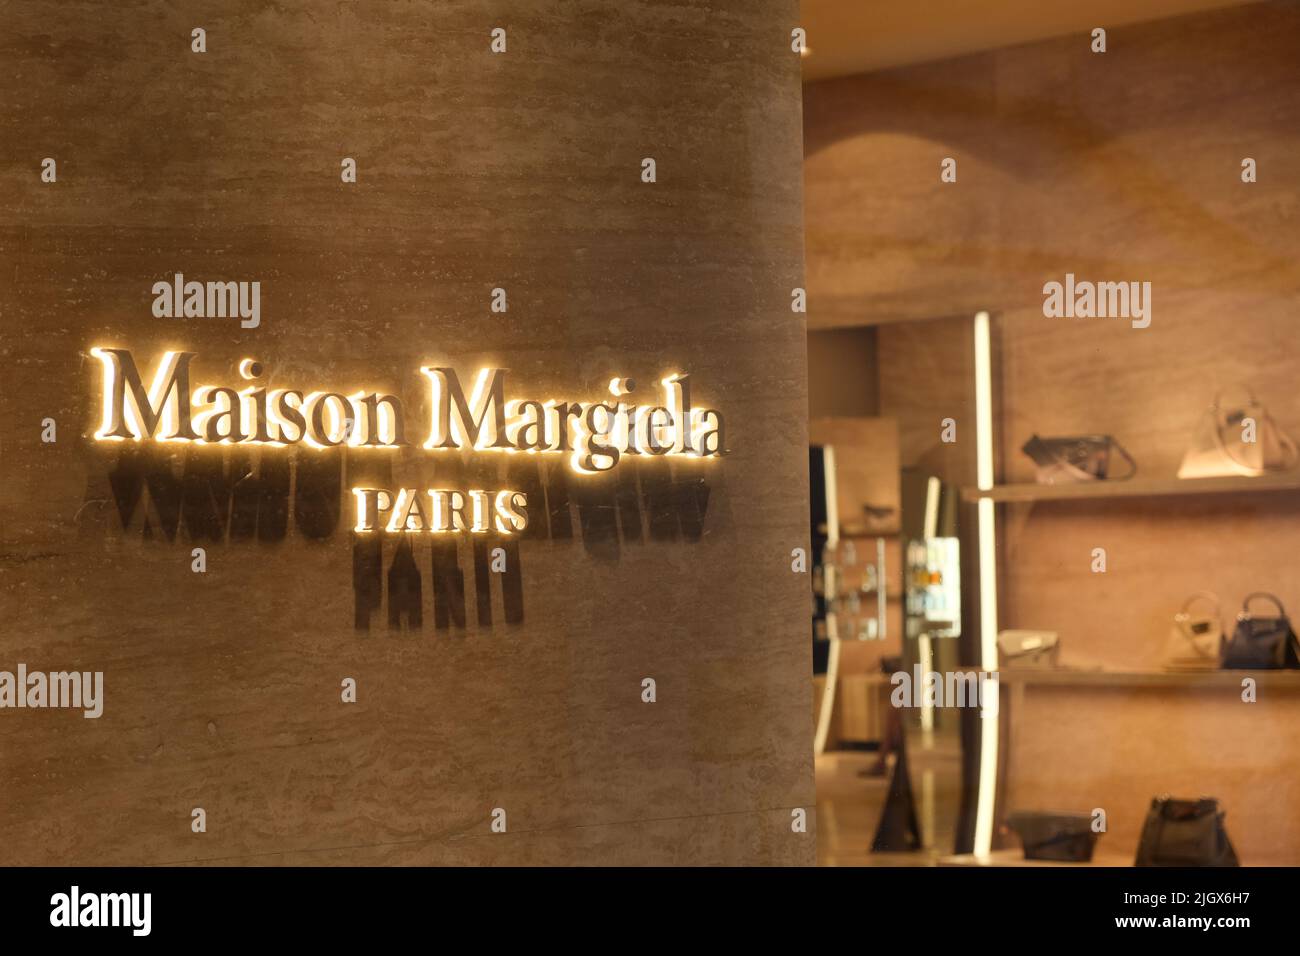 Maison margiela Banque de photographies et d'images à haute résolution -  Alamy